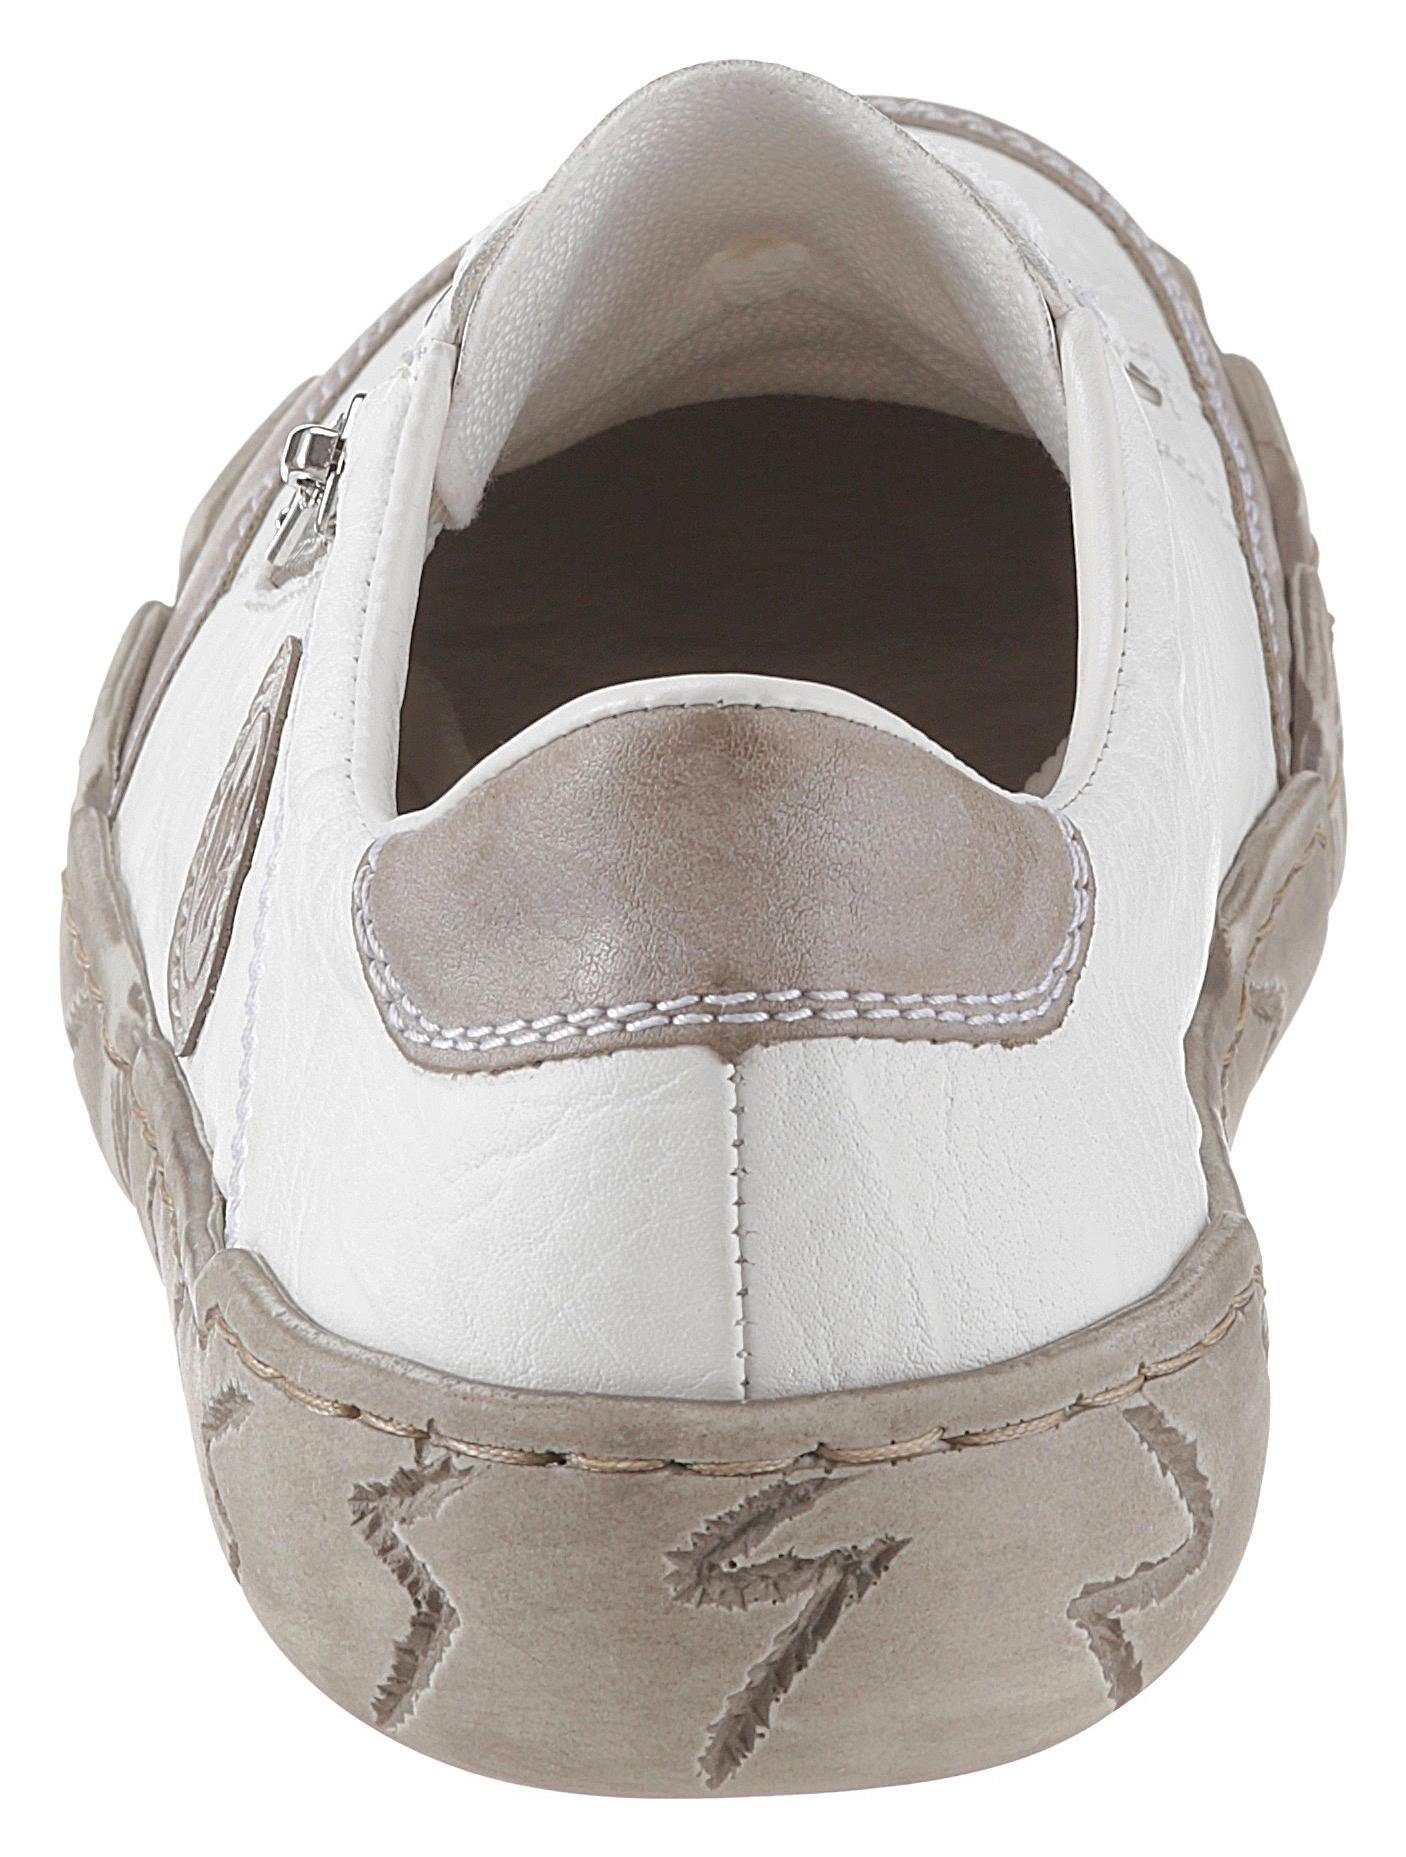 Rieker Zierreißverschluss mit Sneaker weiß-taupe